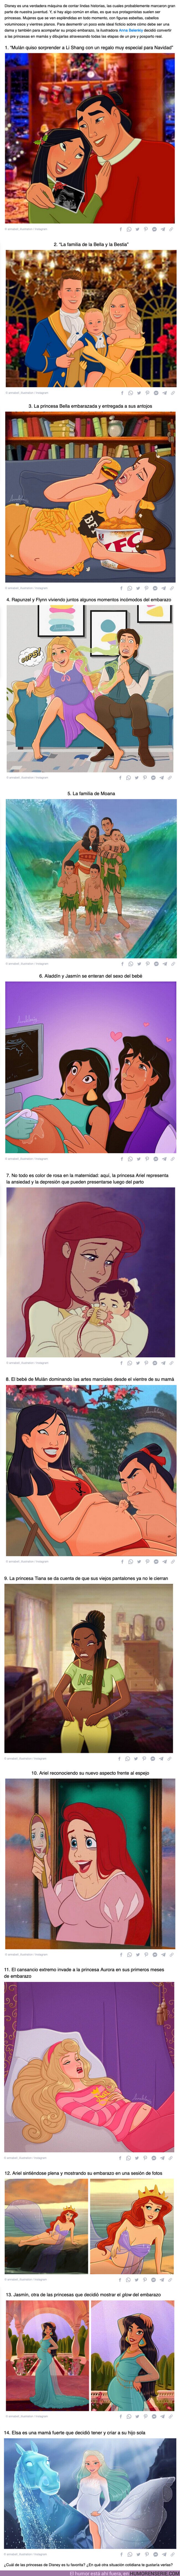 101296 - GALERÍA: Una ilustradora convierte a las princesas de Disney en madres y nos muestra cómo se verían antes y después del parto